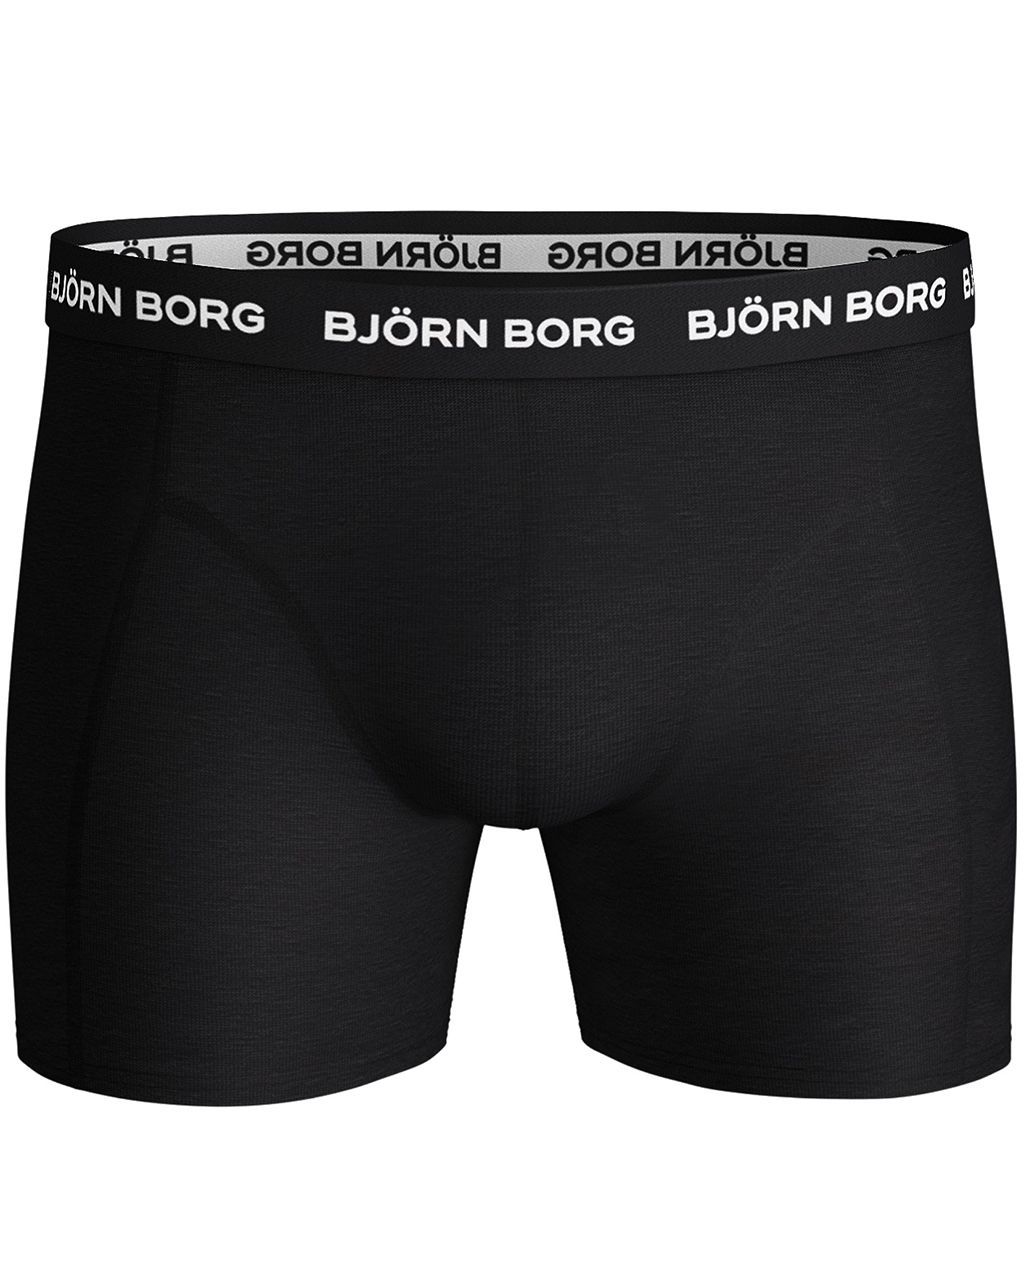 Björn Borg Boxershort 5-pack Zwart 051829-001-L